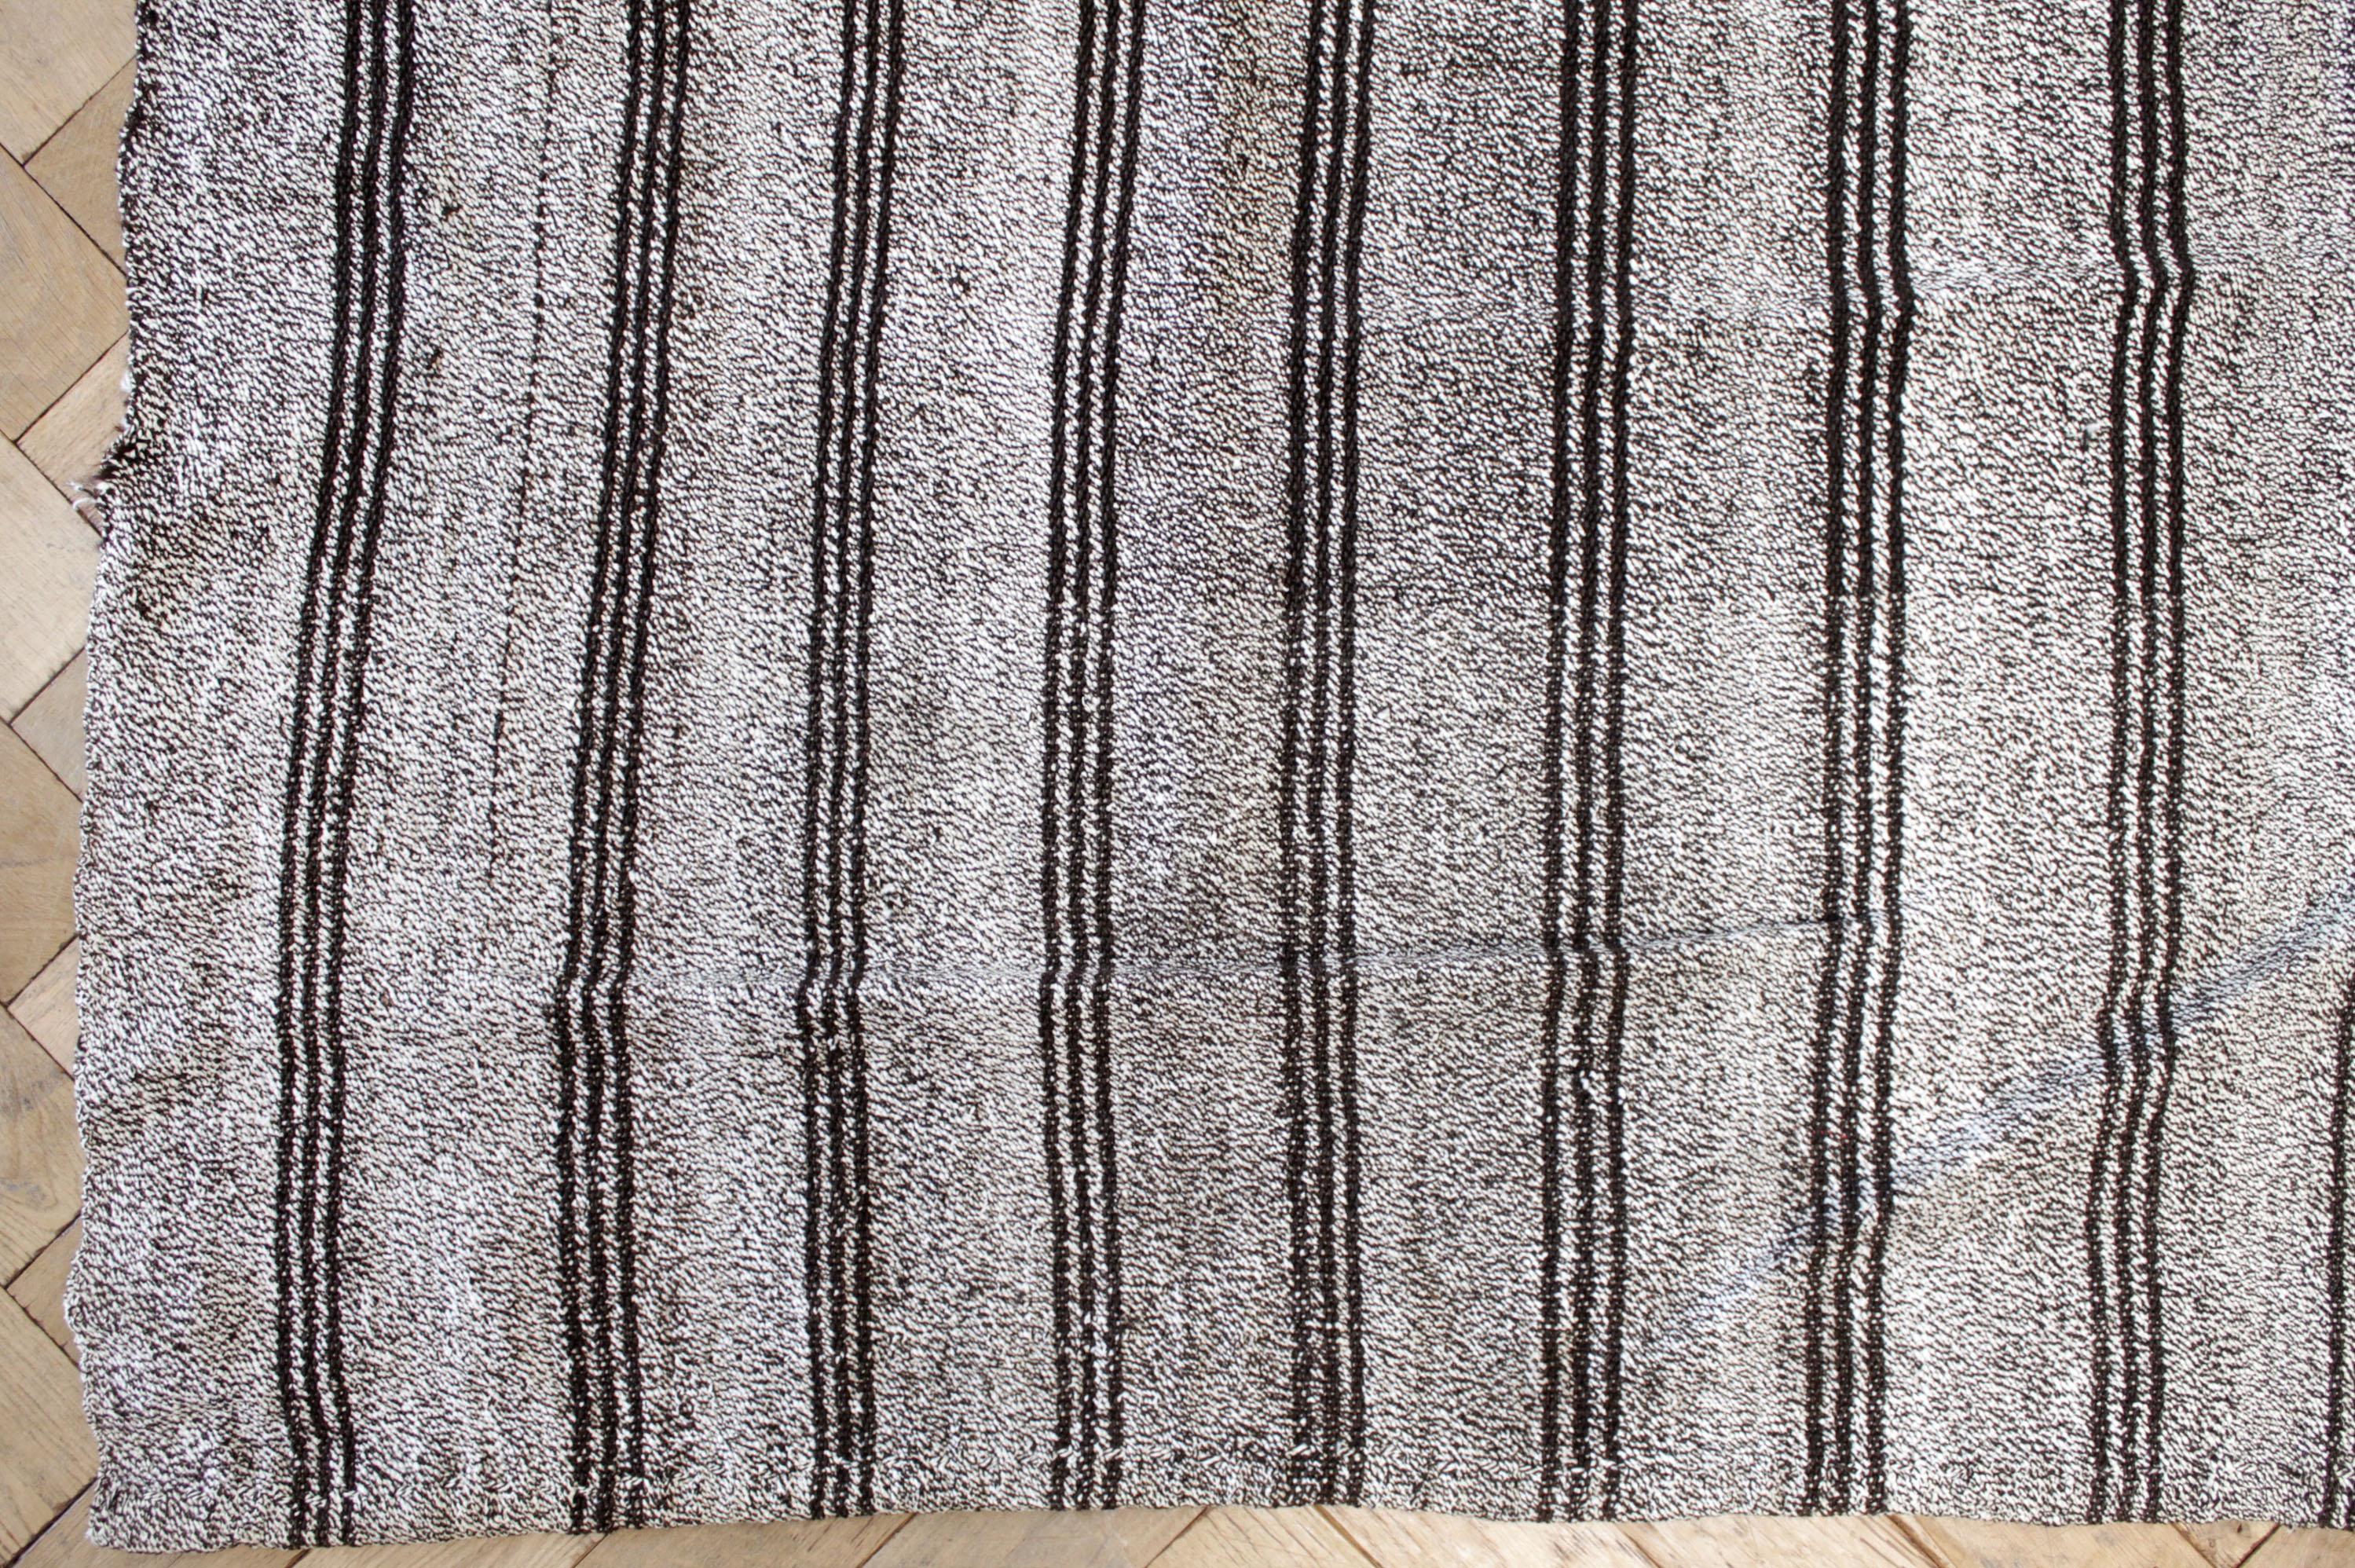 Daria-Teppich
Türkischer Vintage-Teppich in Braun mit weißer Webart und cremeweißen Streifen, mit dunkelbraunen Streifen.

Flachgewebe, Wolle und Ziegenhaar machen sie extrem haltbar und eignen sich hervorragend für stark frequentierte Bereiche.